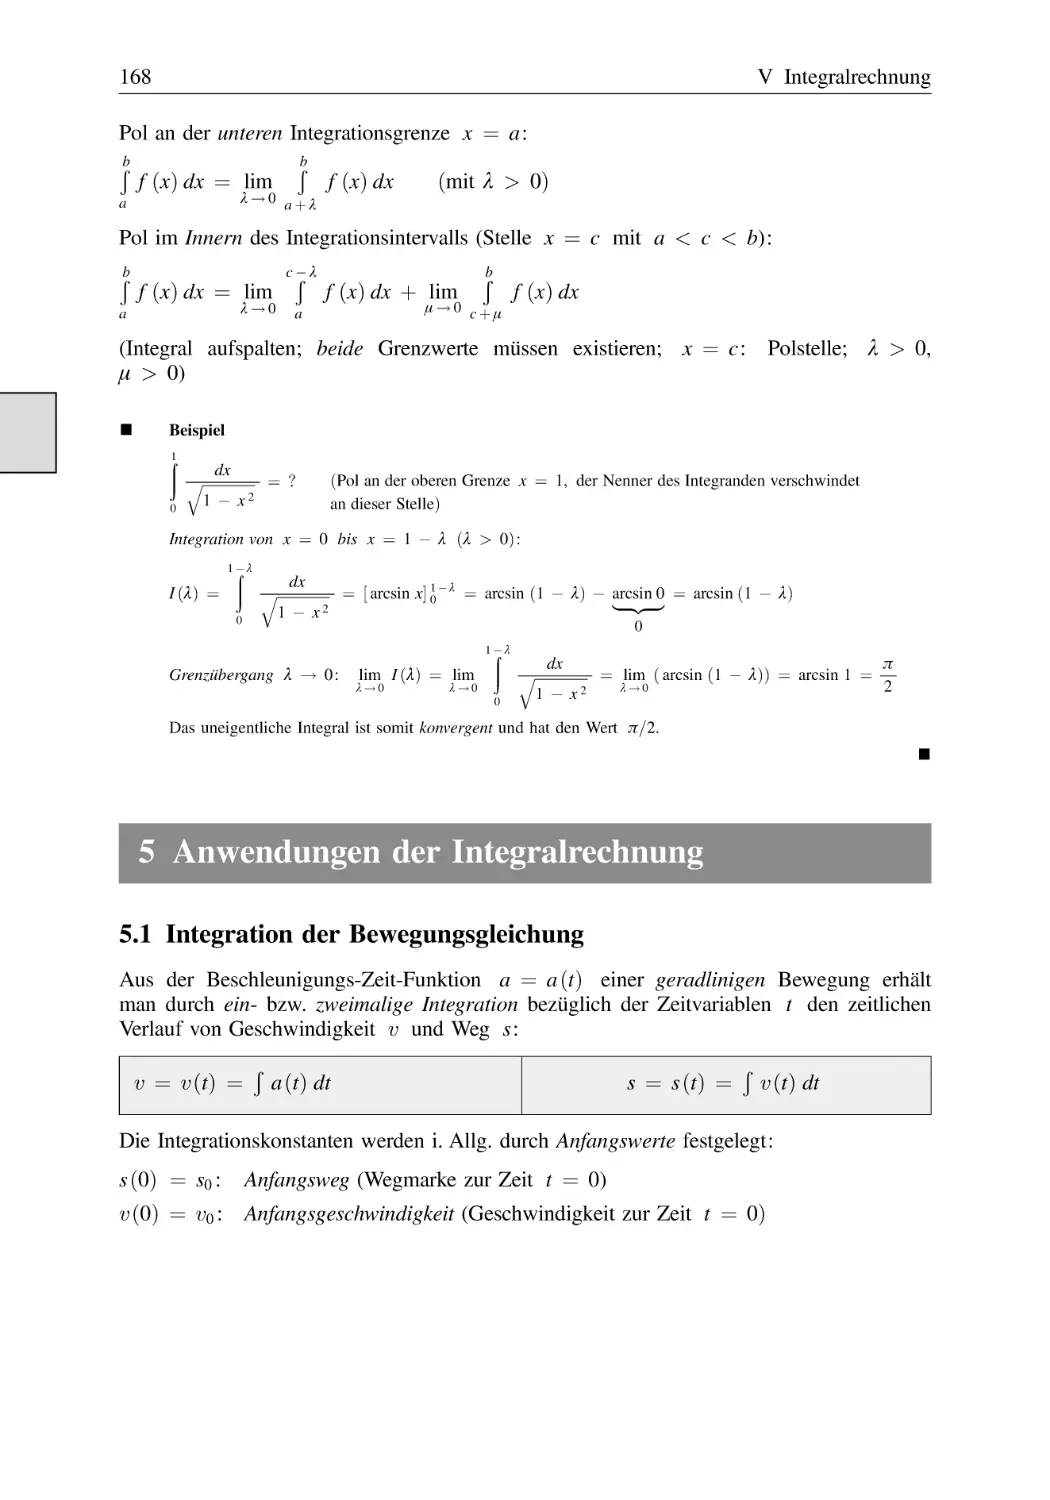 5 Anwendungen der Integralrechnung
5.1 Integration der Bewegungsgleichung